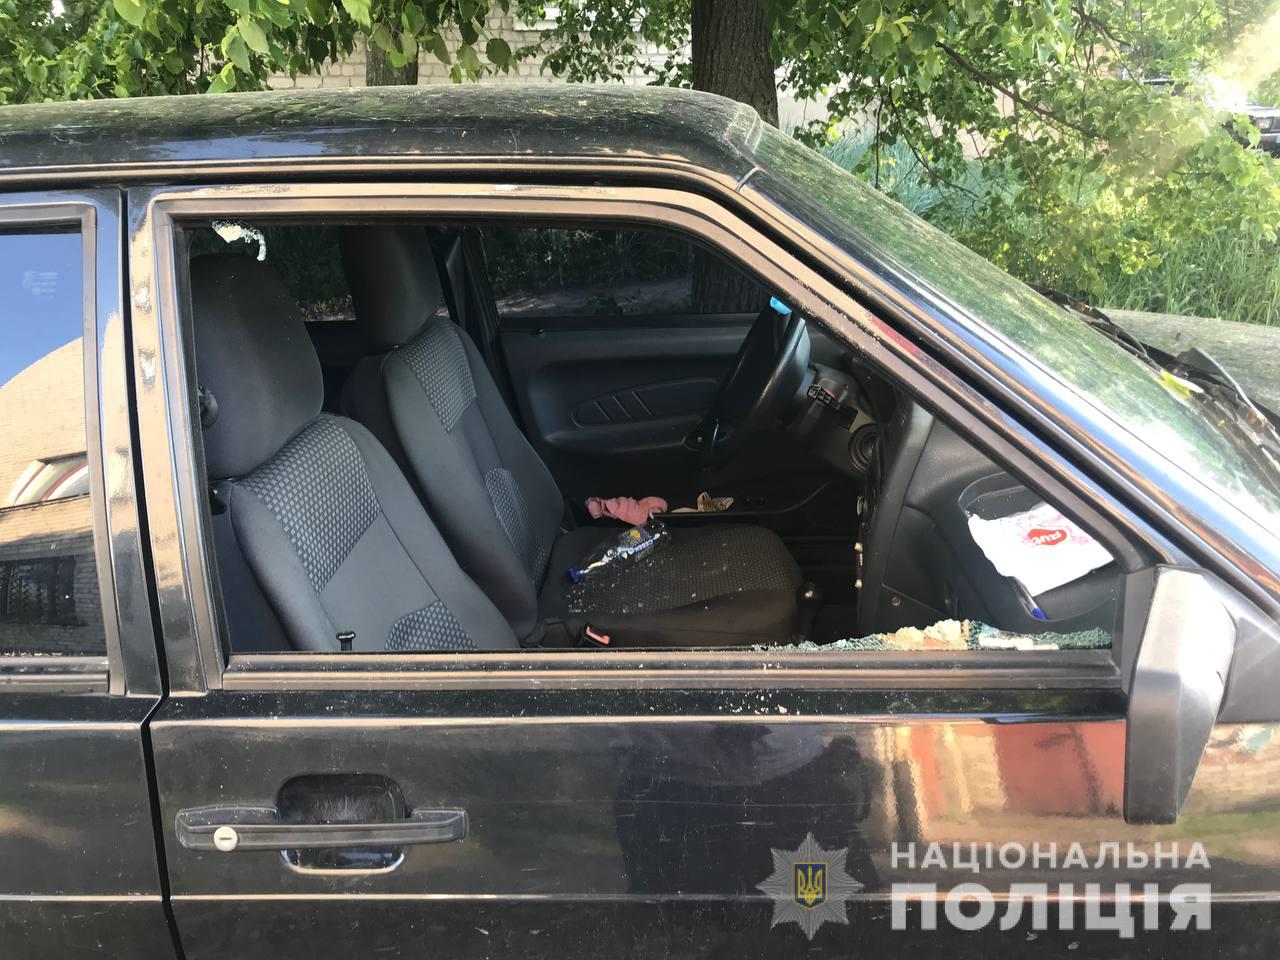 Нерадивый угонщик повредил дюжину автомобилей на Харьковщине, однако настолько и не смог покататься